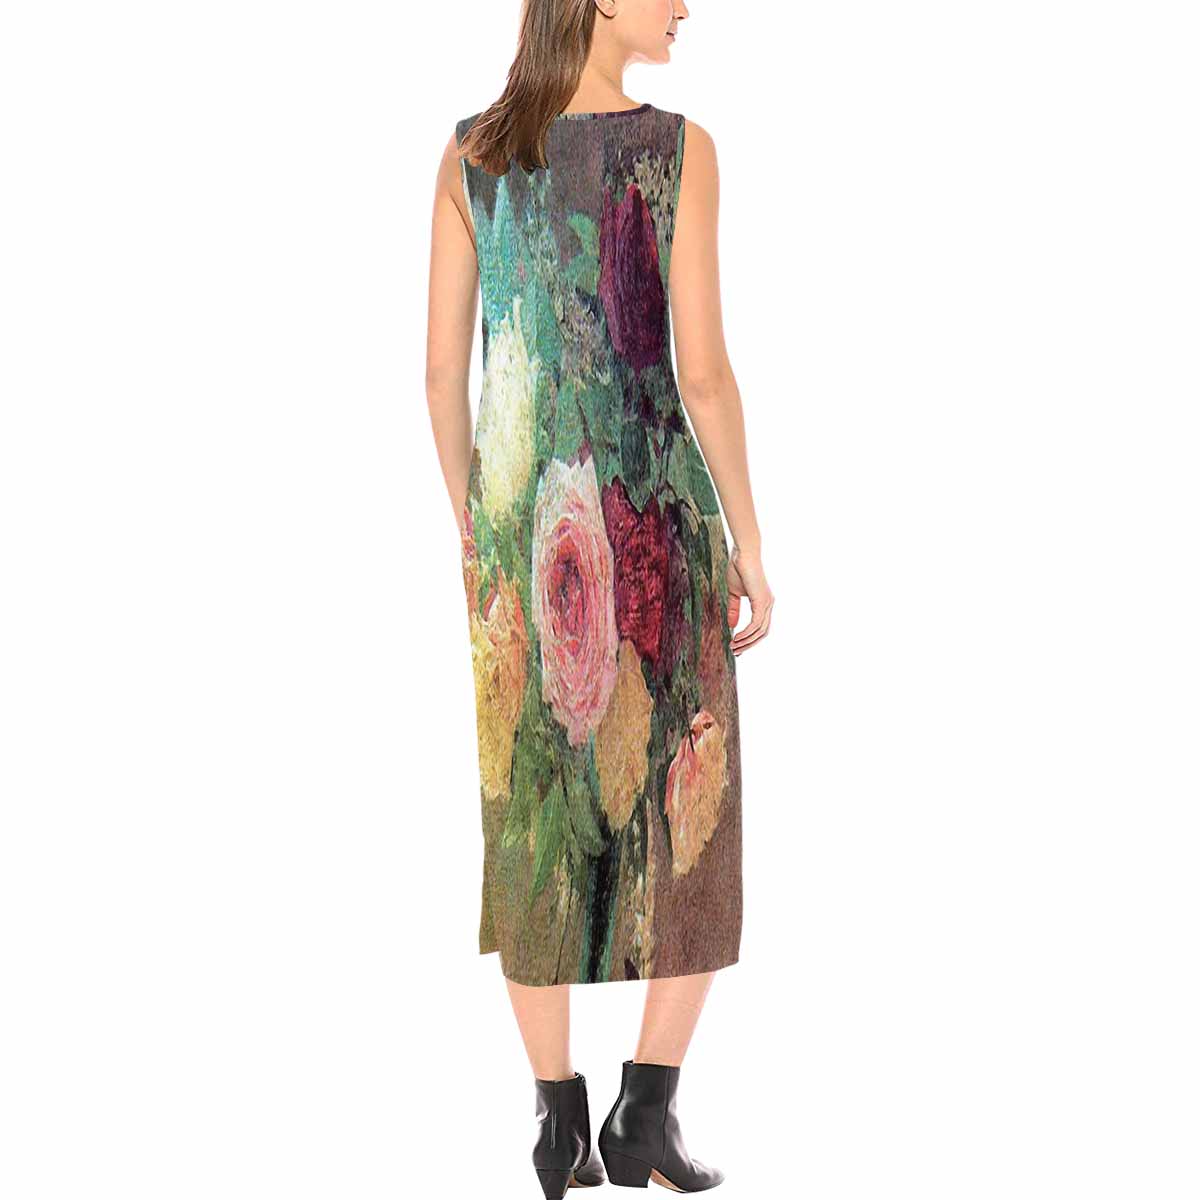 Vintage floral long dress, model D09538 Design 29